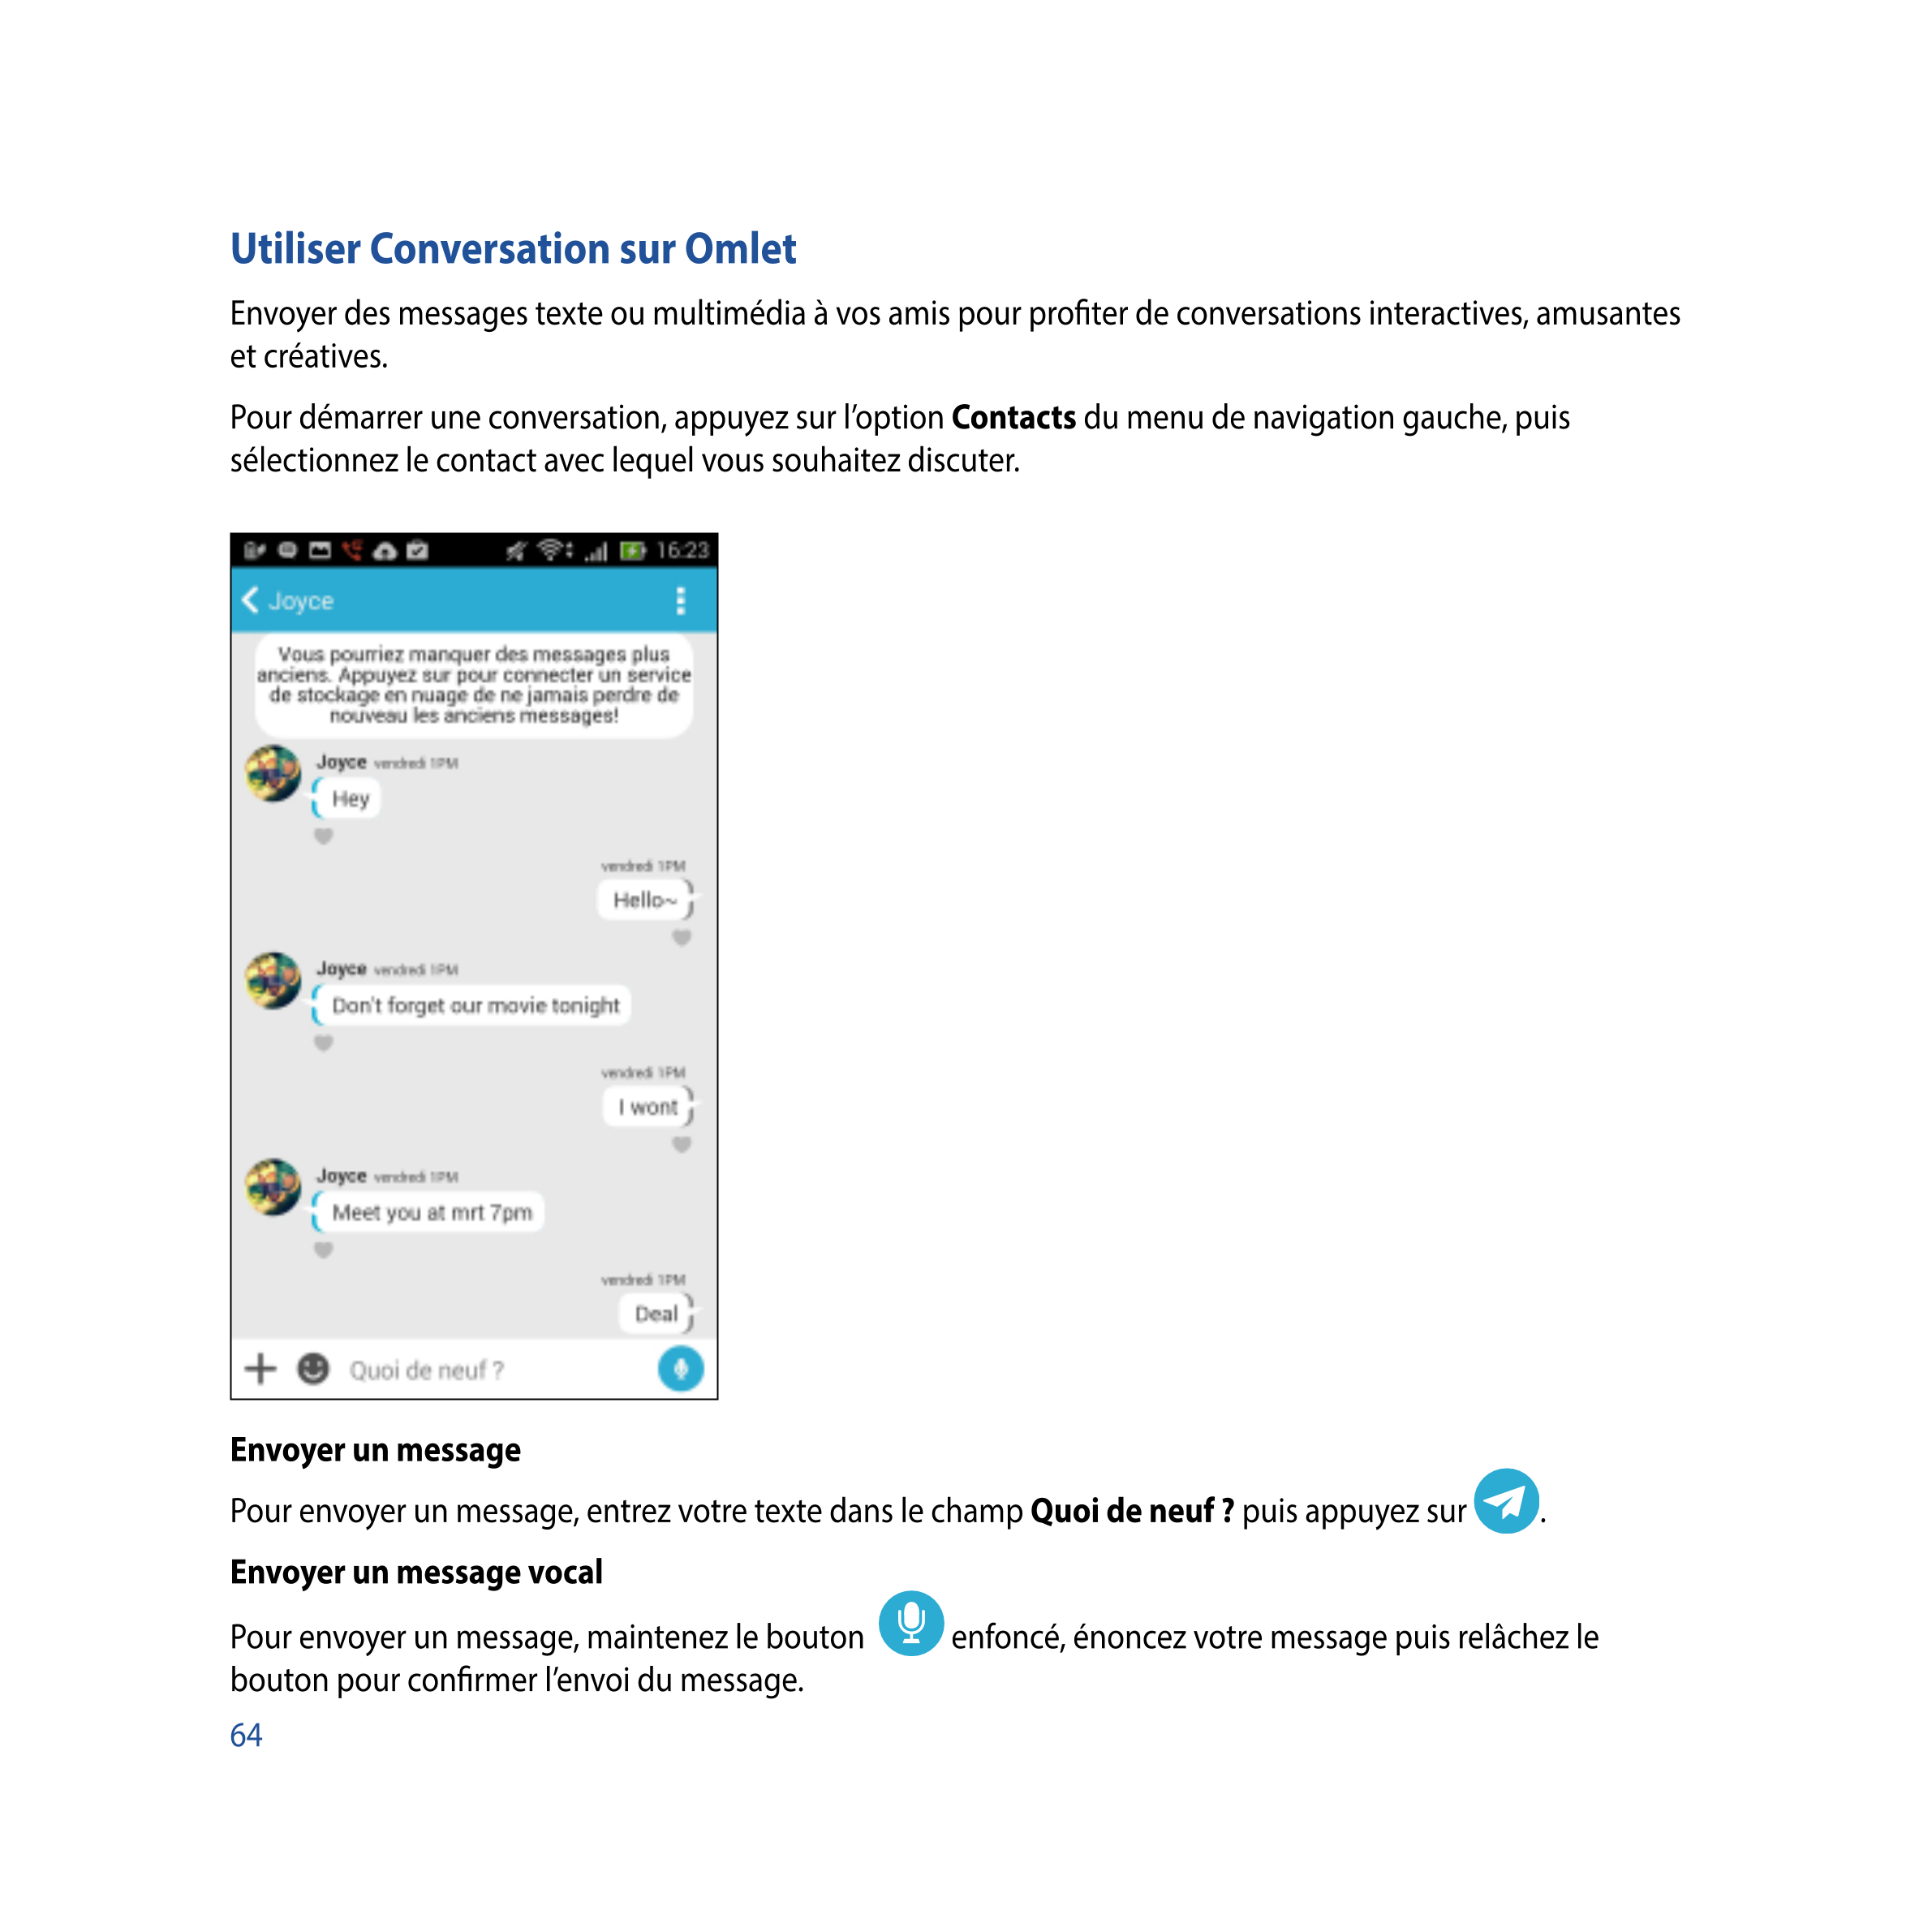 Utiliser Conversation sur Omlet
Envoyer des messages texte ou multimédia à vos amis pour proﬁter de conversations interactives, 